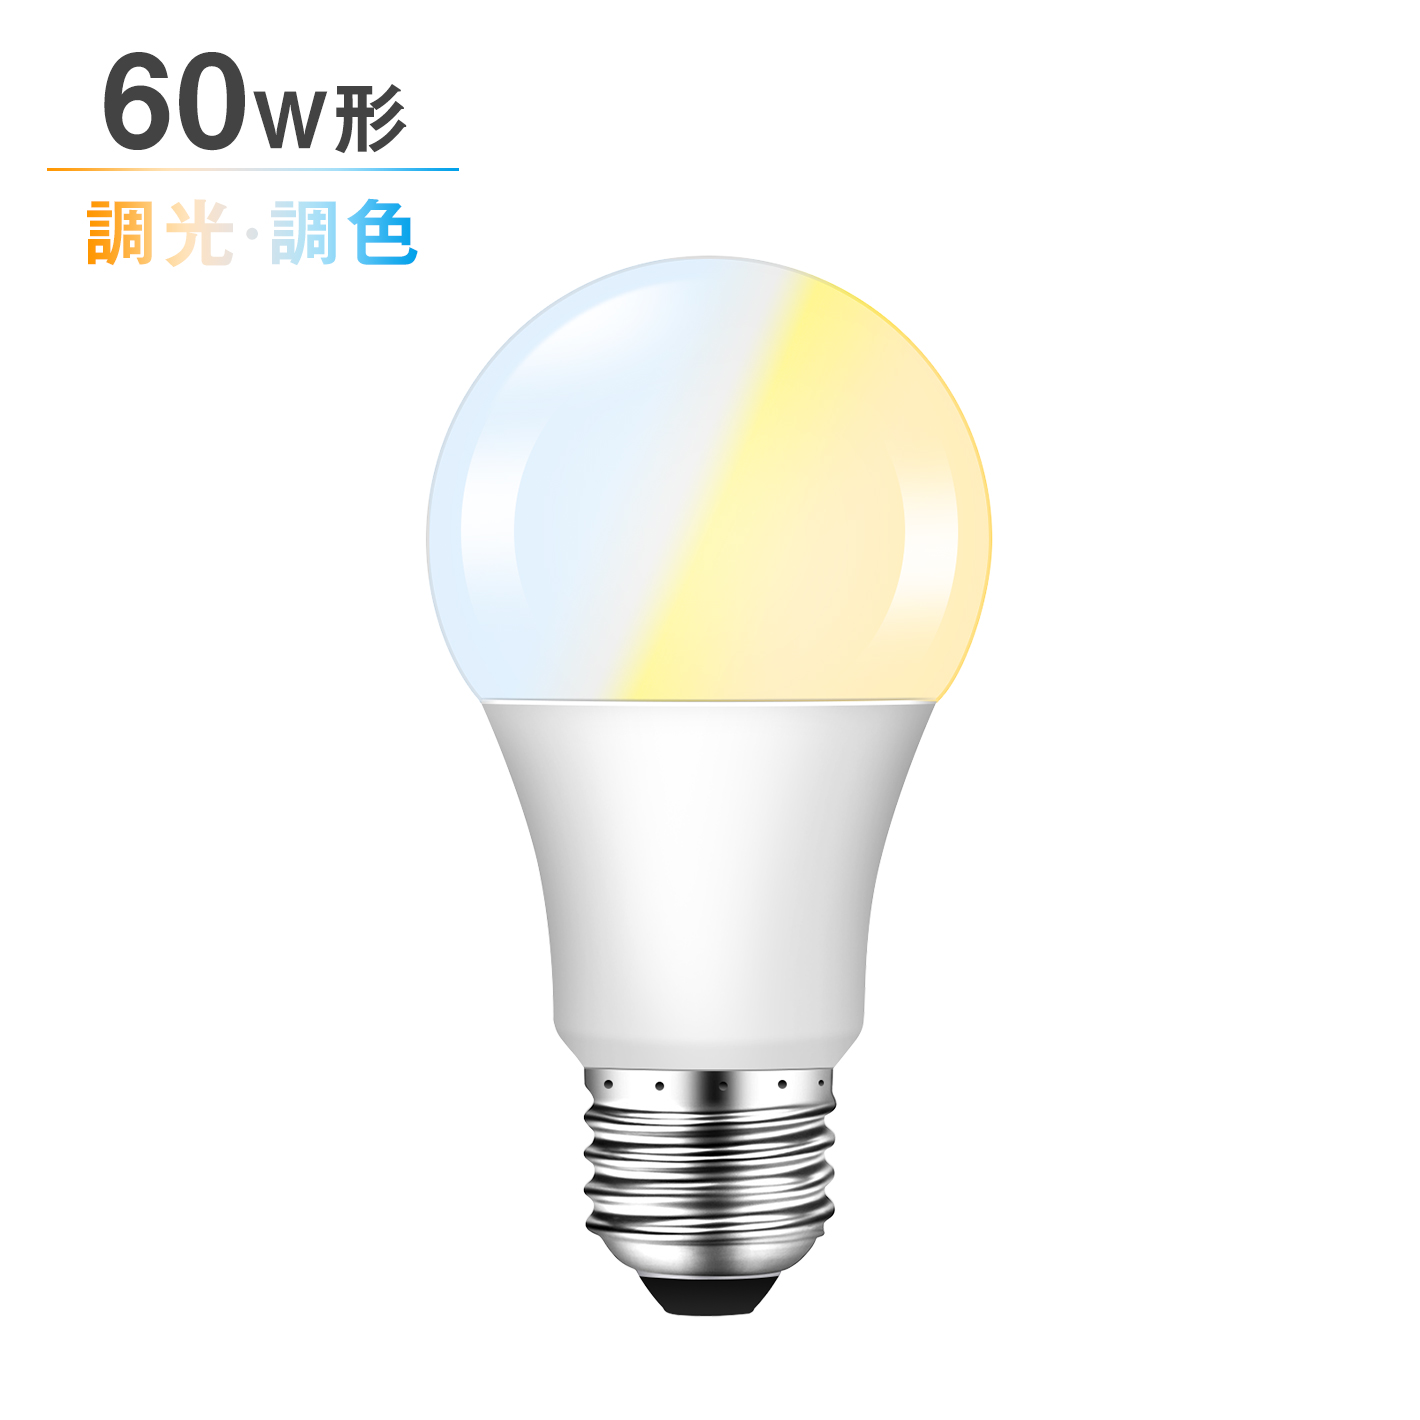 共同照明 LED電球 60W形相当 E26 調光調色 広配光 リモコン電球 シーリングライト 電球色 昼白色 昼光色 リモ - 共同照明LED専門店